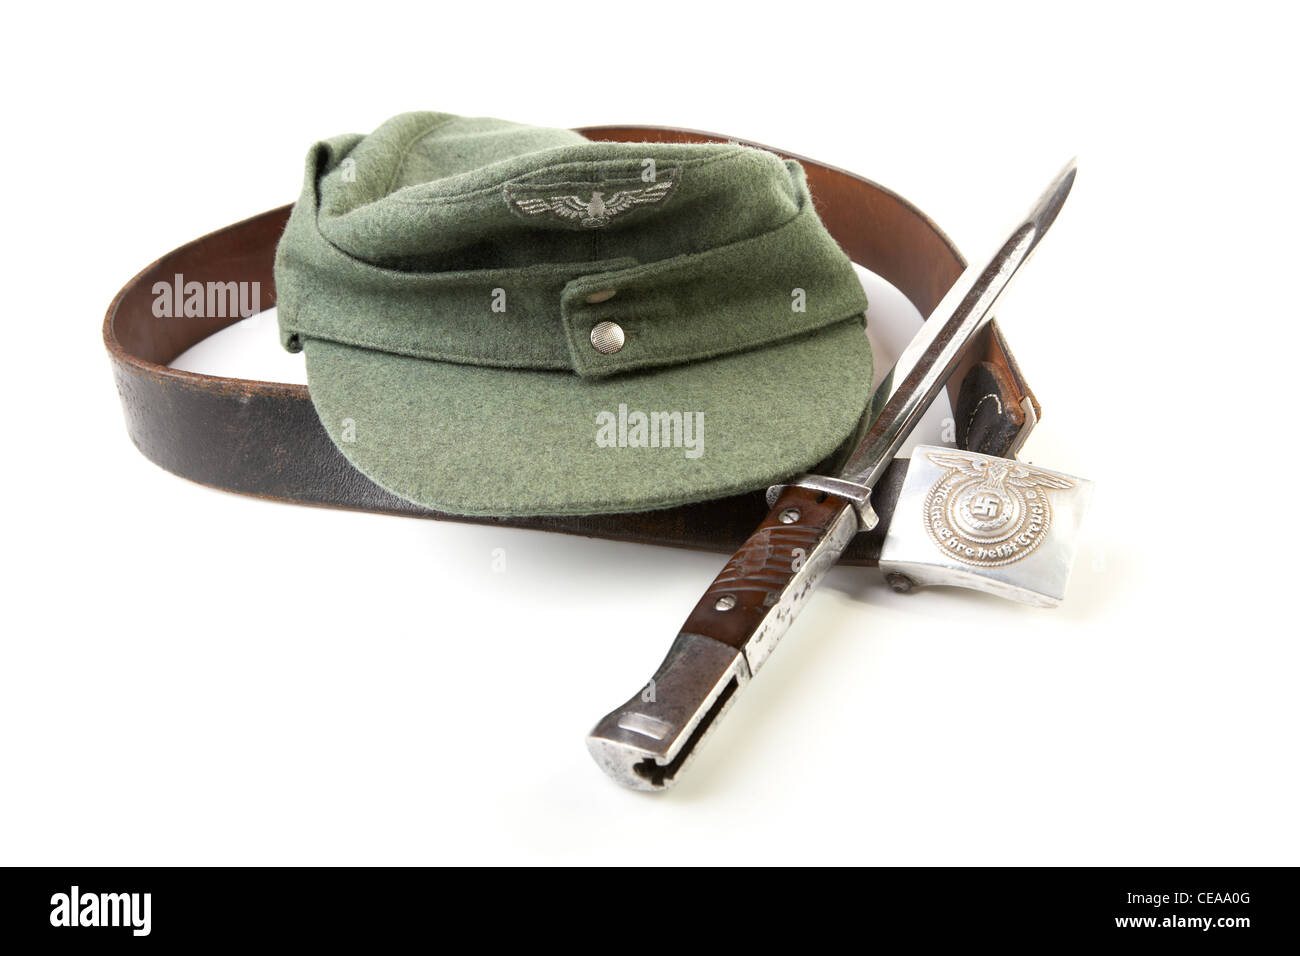 Cinghia Kepi a baionetta coltello del soldato tedesco su sfondo bianco Foto Stock